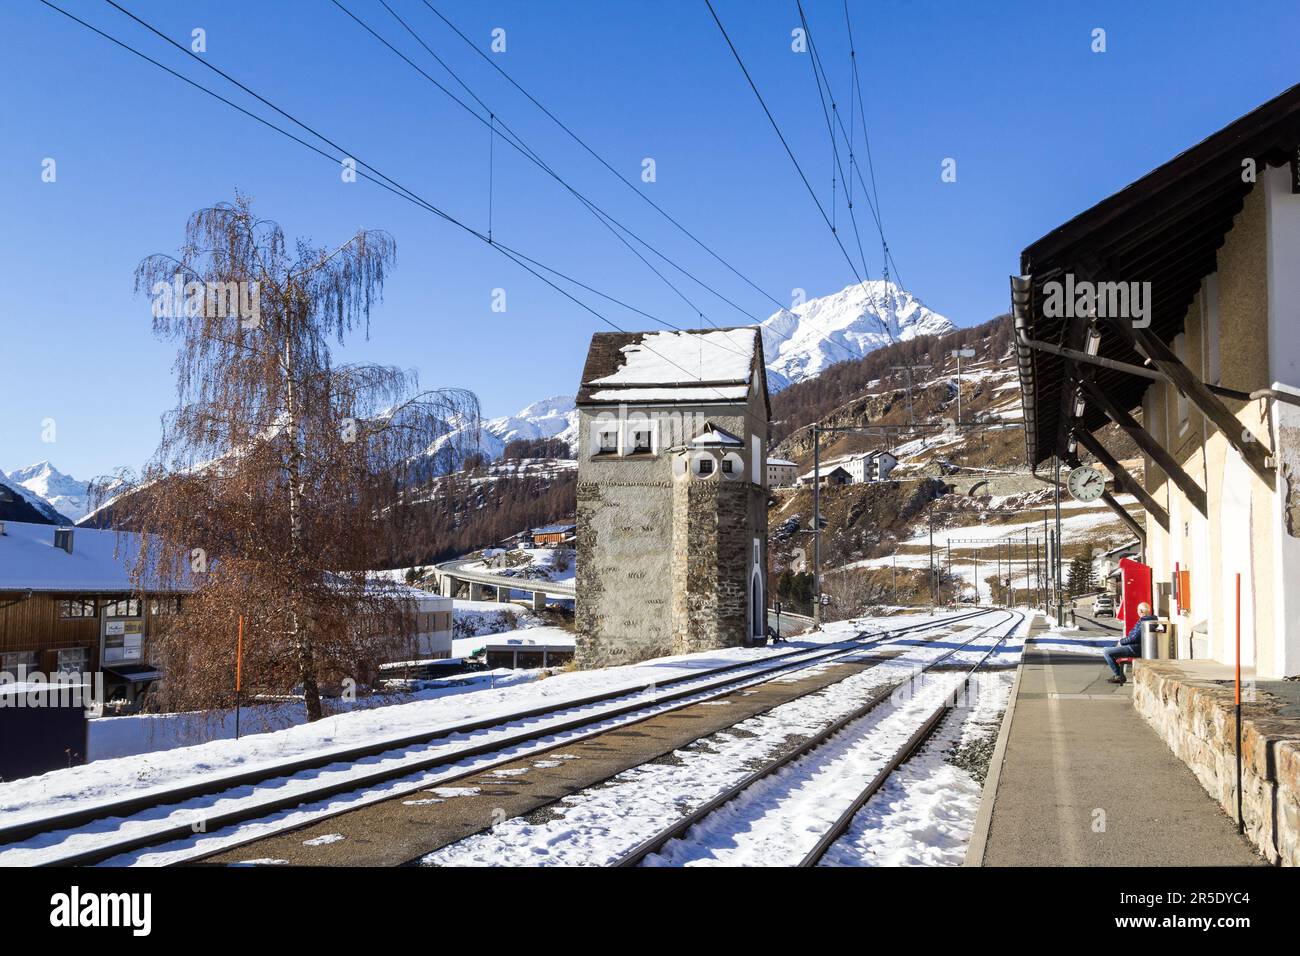 Ardez, Svizzera - Dicembre 03. 2121: La vecchia torre di guardia alla stazione ferroviaria del villaggio di Ardez nelle Alpi svizzere. Valle dell'Engadina, Canton Grigioni, Foto Stock